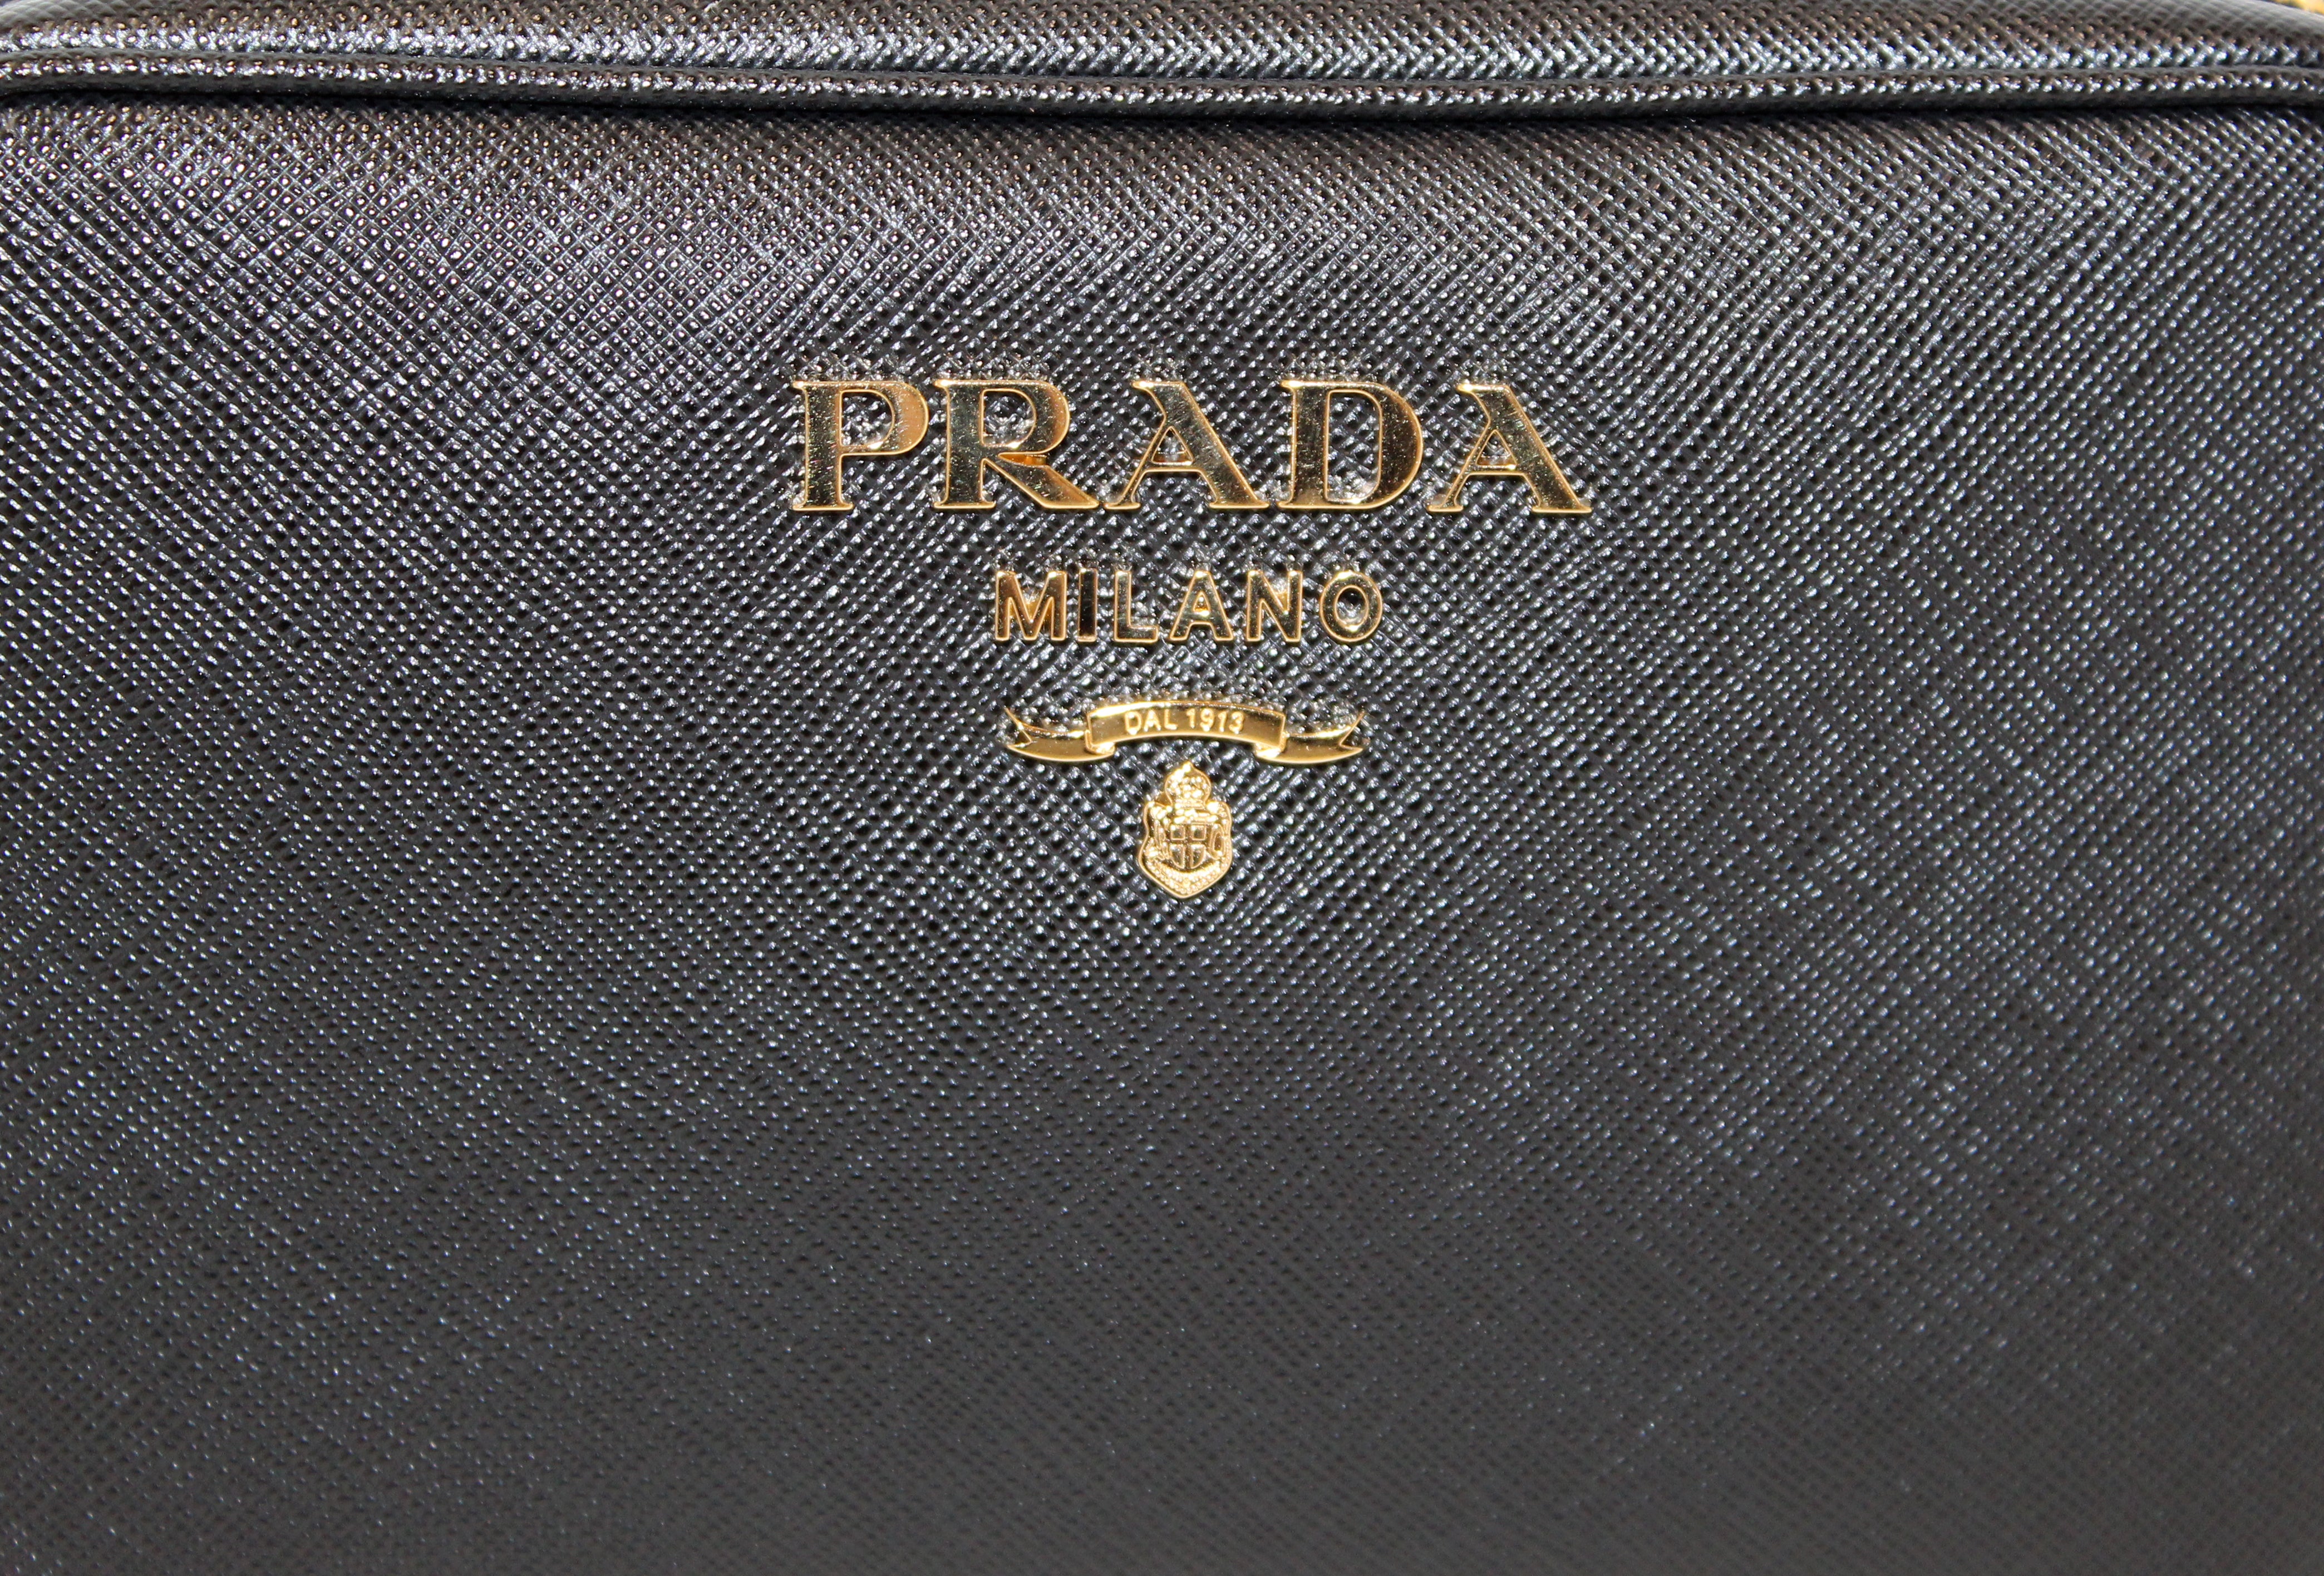 Authentic NEW Prada Black Saffiano Leather Bandoliera Camera